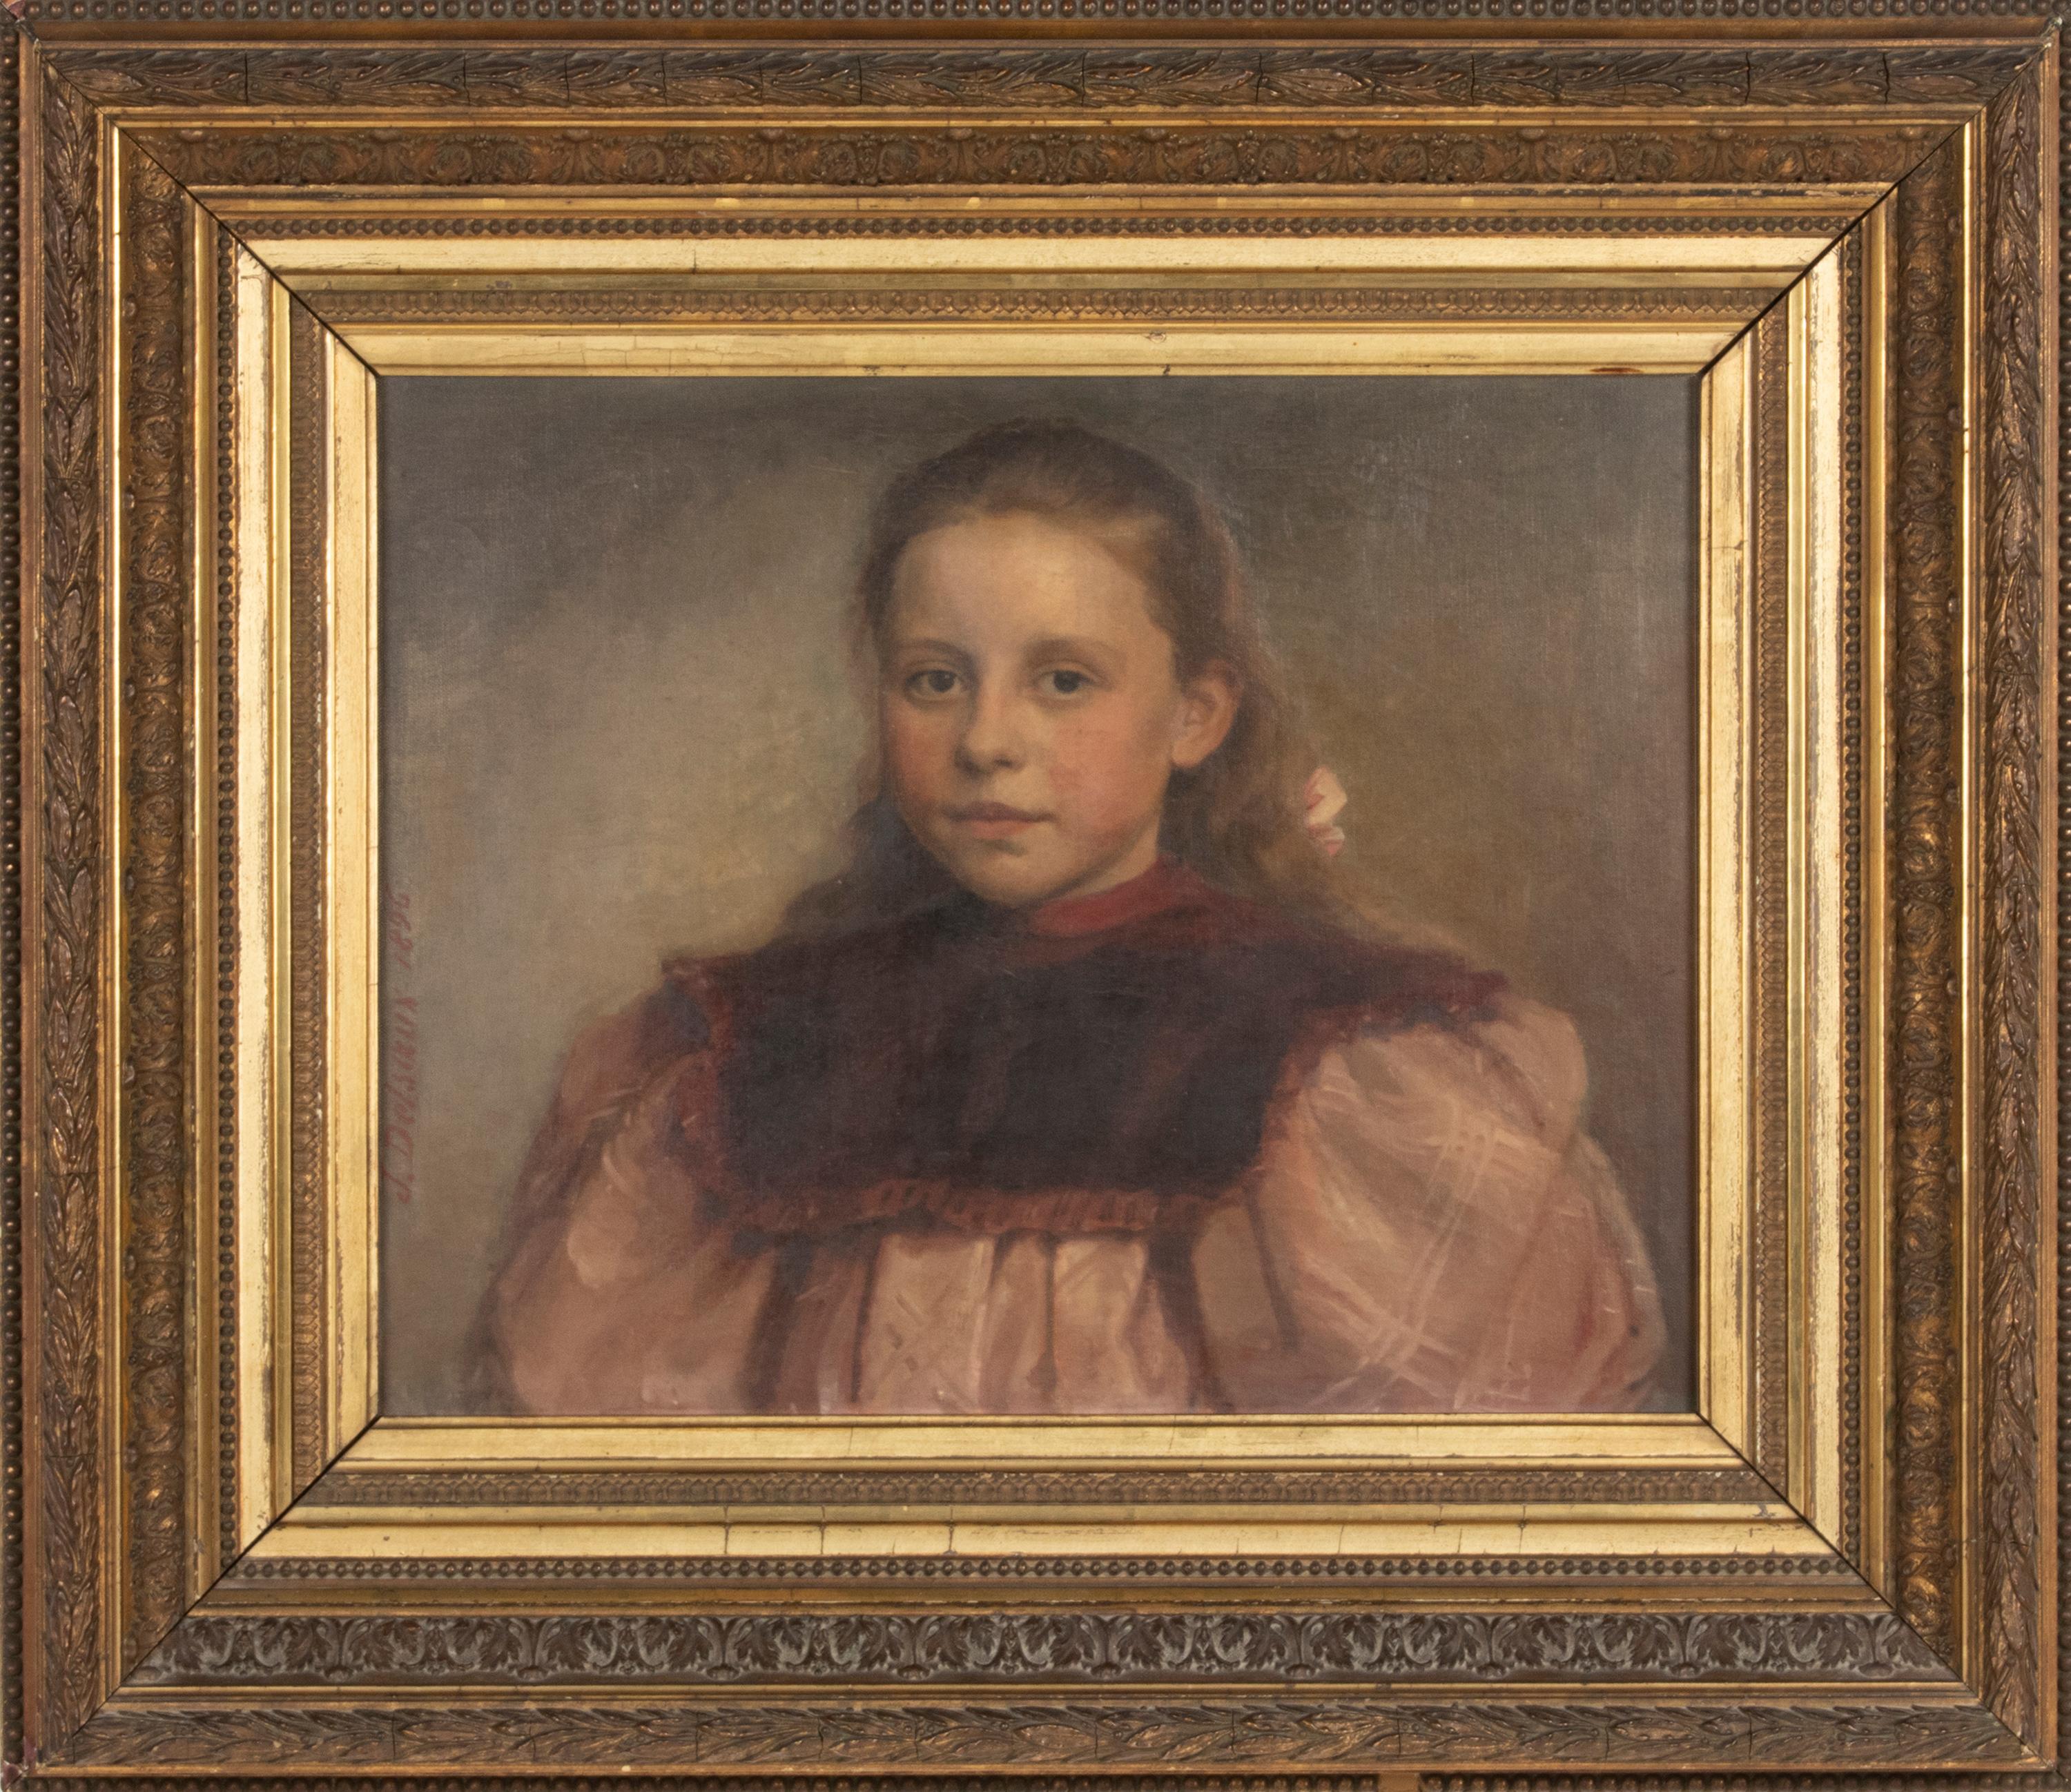 Jeremie DELSAUX. Glain, Belgien 1852 - Lüttich 1927.
Ein antikes Ölgemälde auf Leinwand, das Porträt eines jungen Mädchens mit einem Haarbogen. Es wurde von Jeremie DELSAUX gemalt und auf 1896 datiert. Öl auf Leinwand. In einem Holzrahmen mit